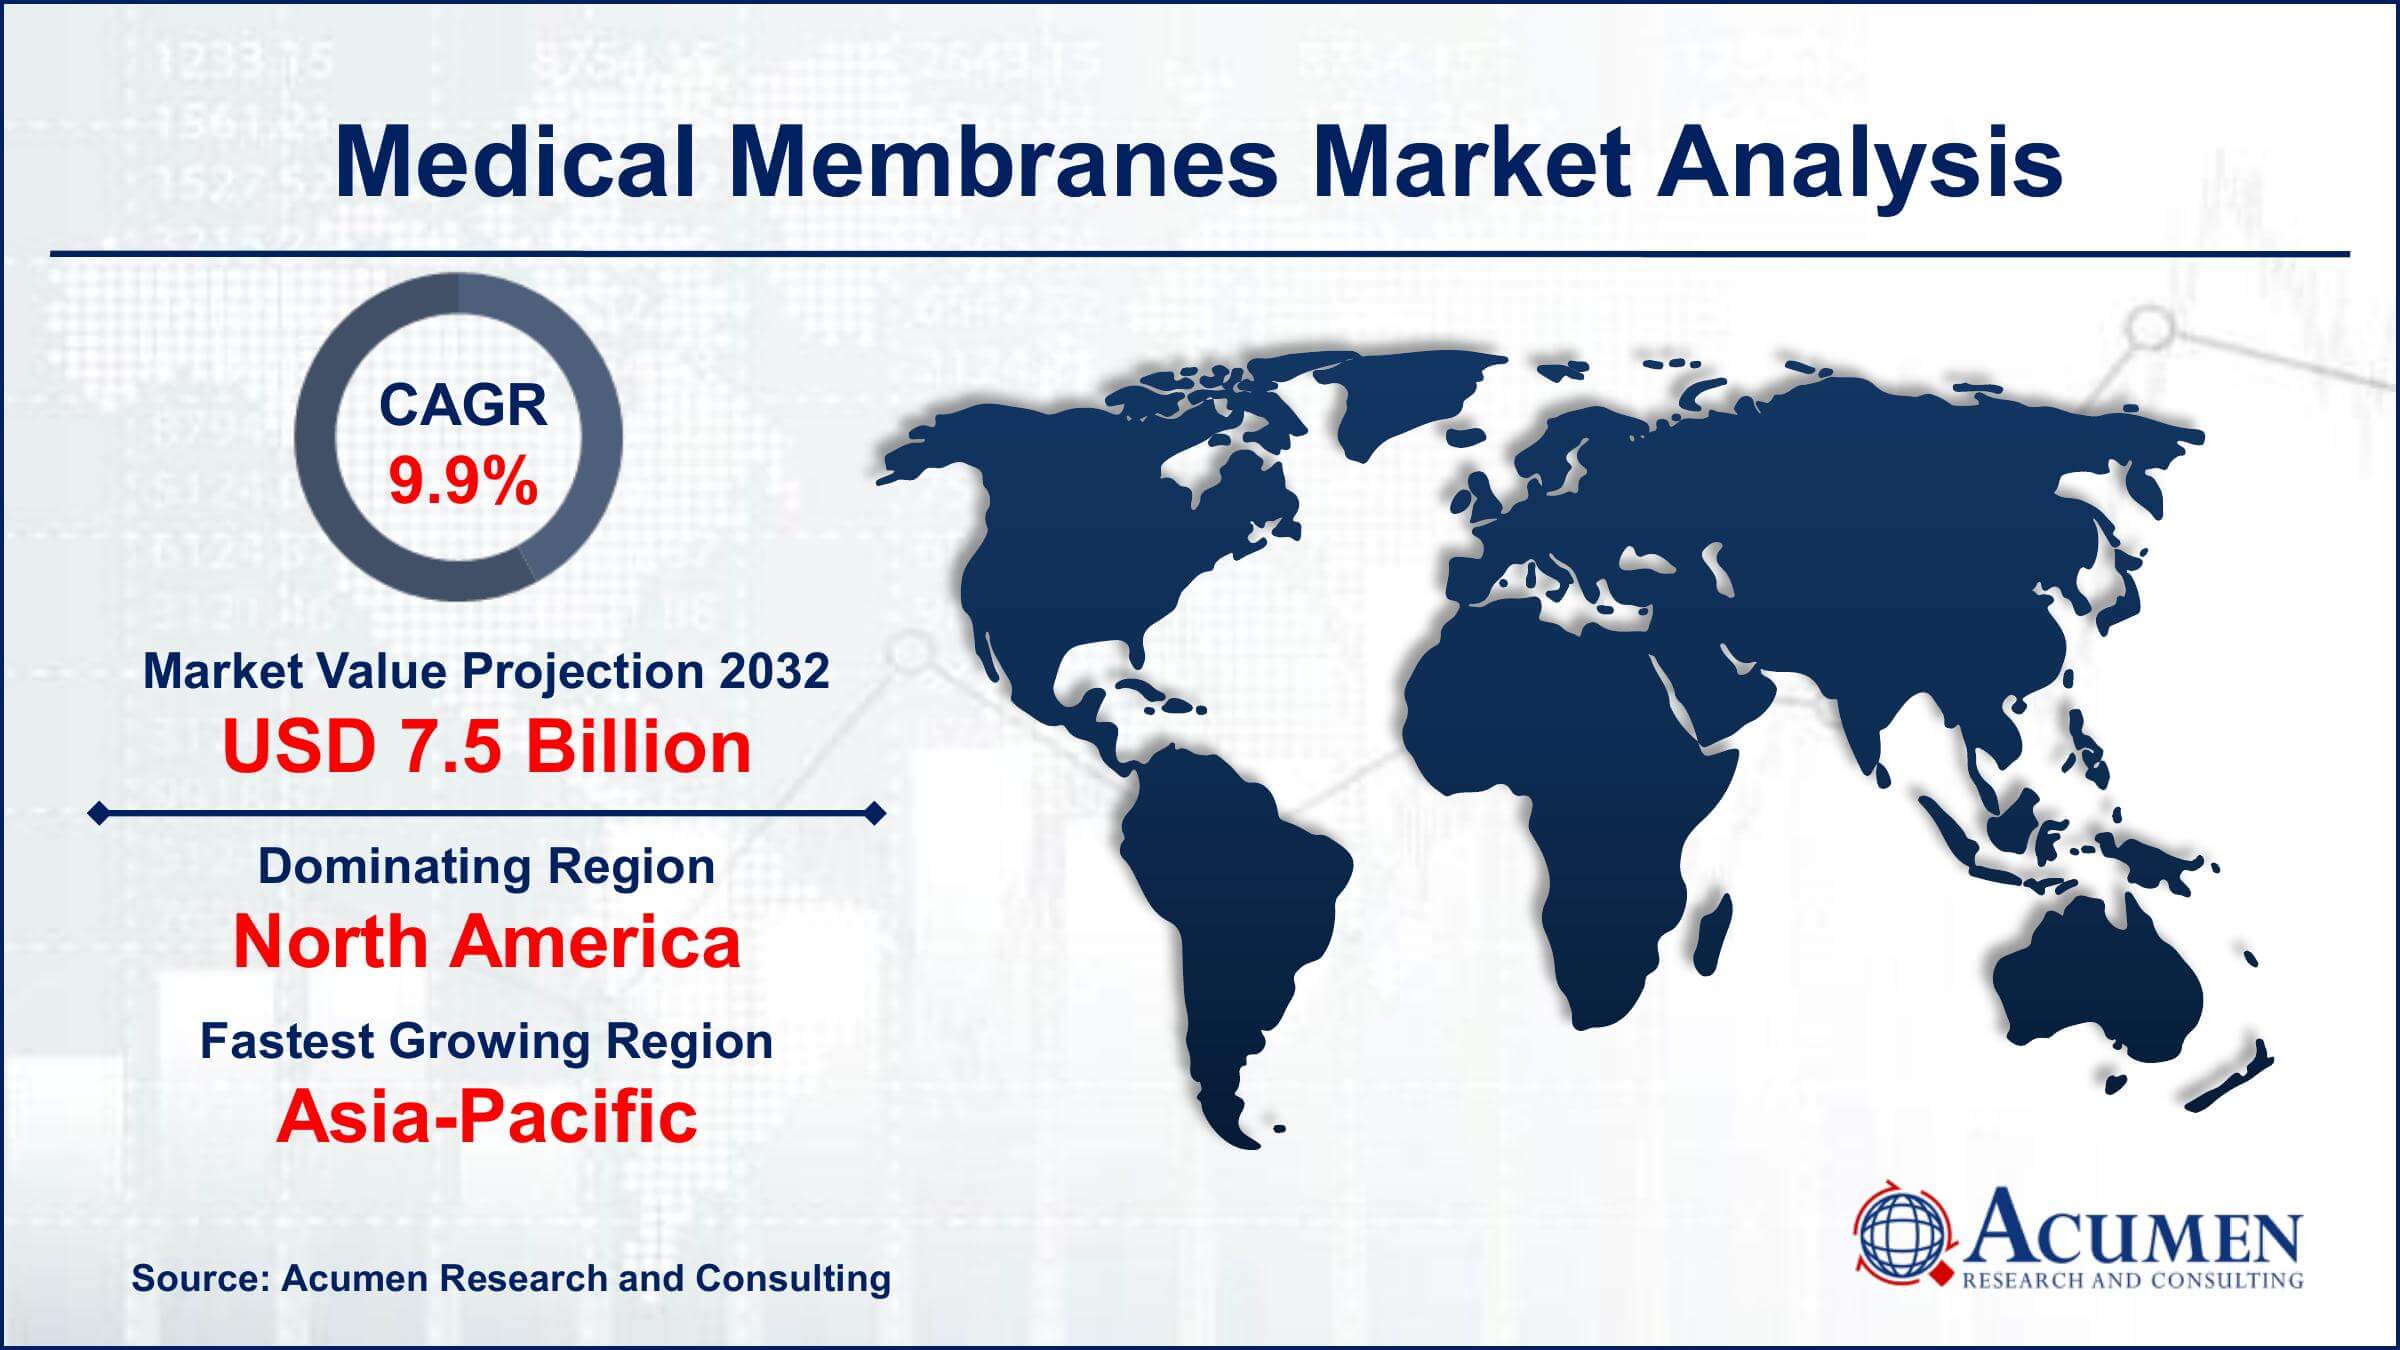 Global Medical Membranes Market Trends